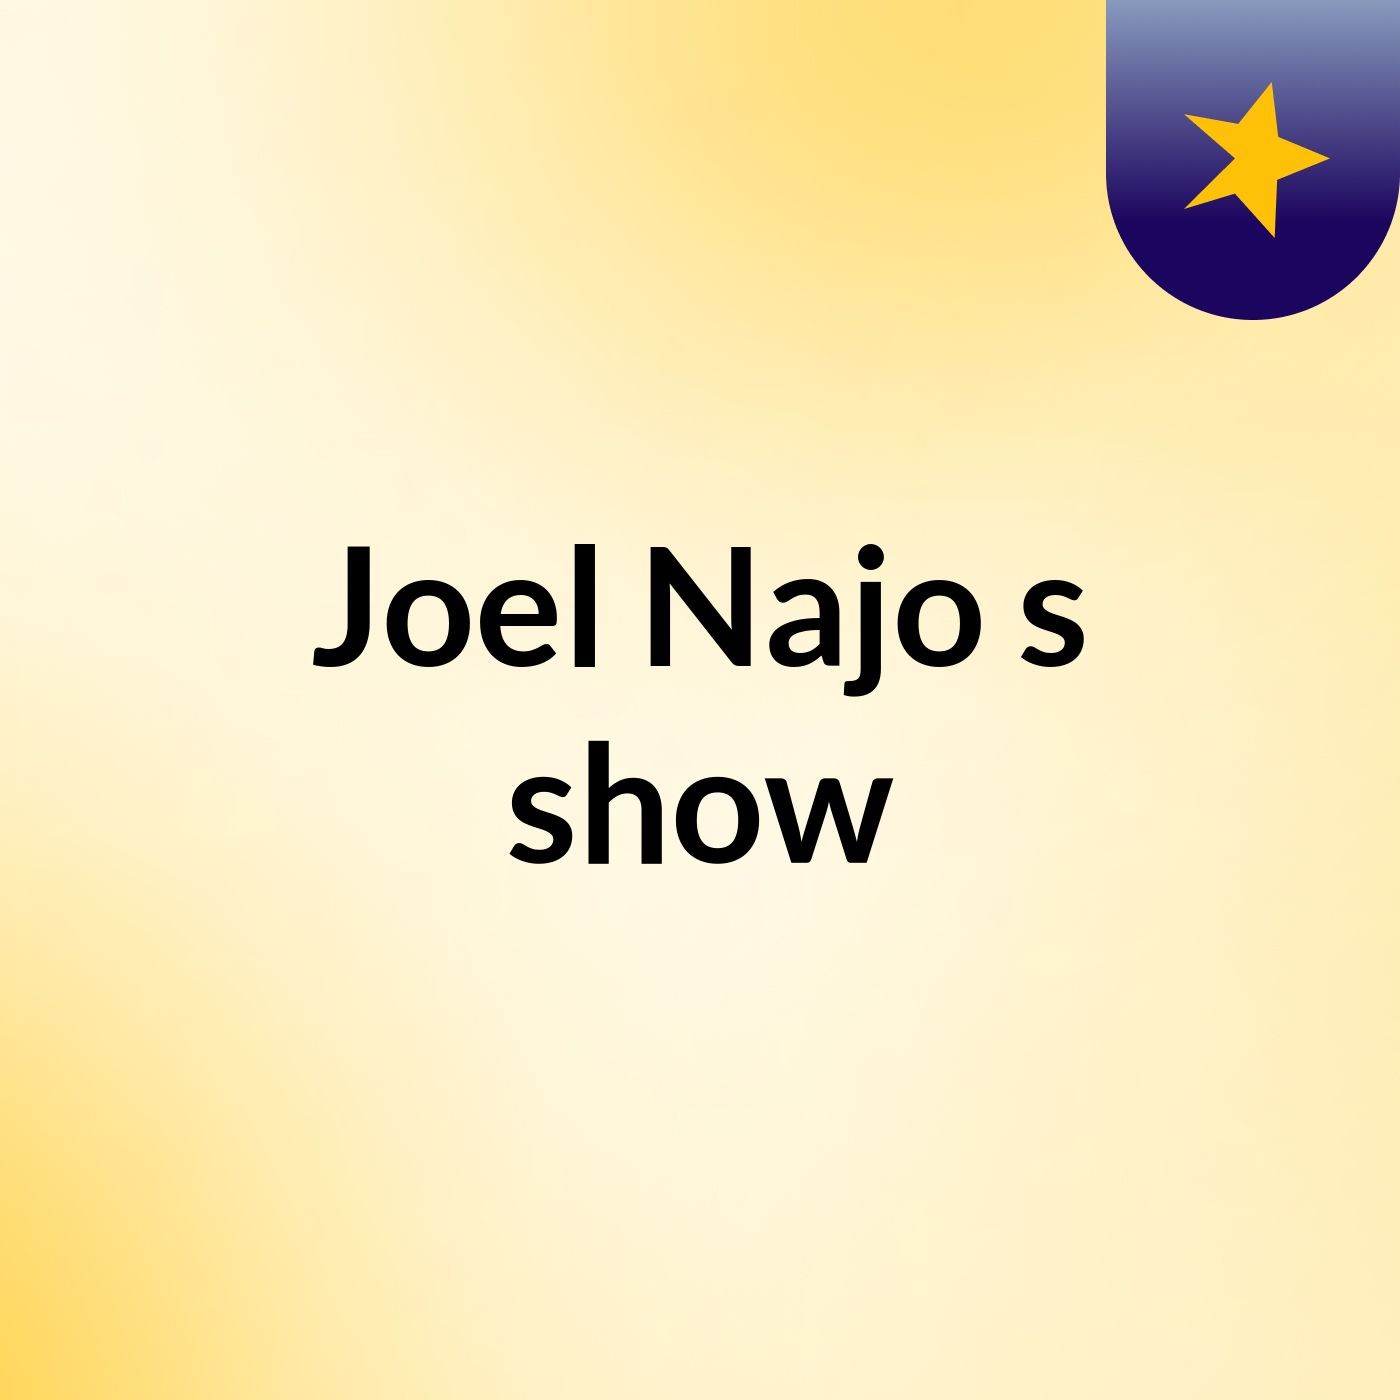 Joel Najo's show